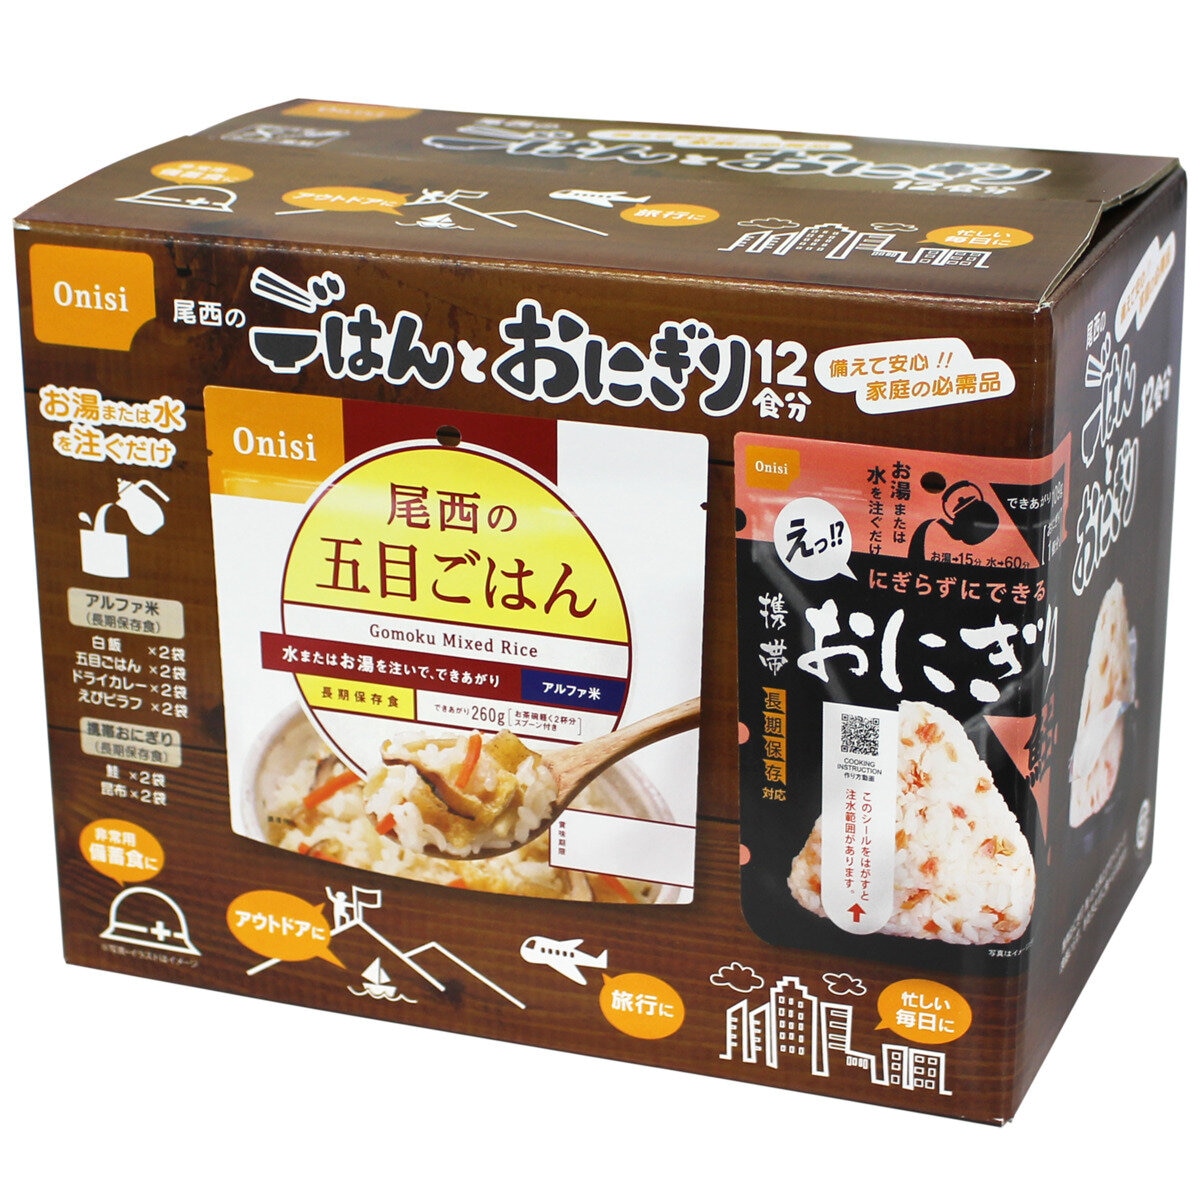 尾西食品 ごはんとおにぎり アソートセット 12食分 長期5年保存 | Costco Japan